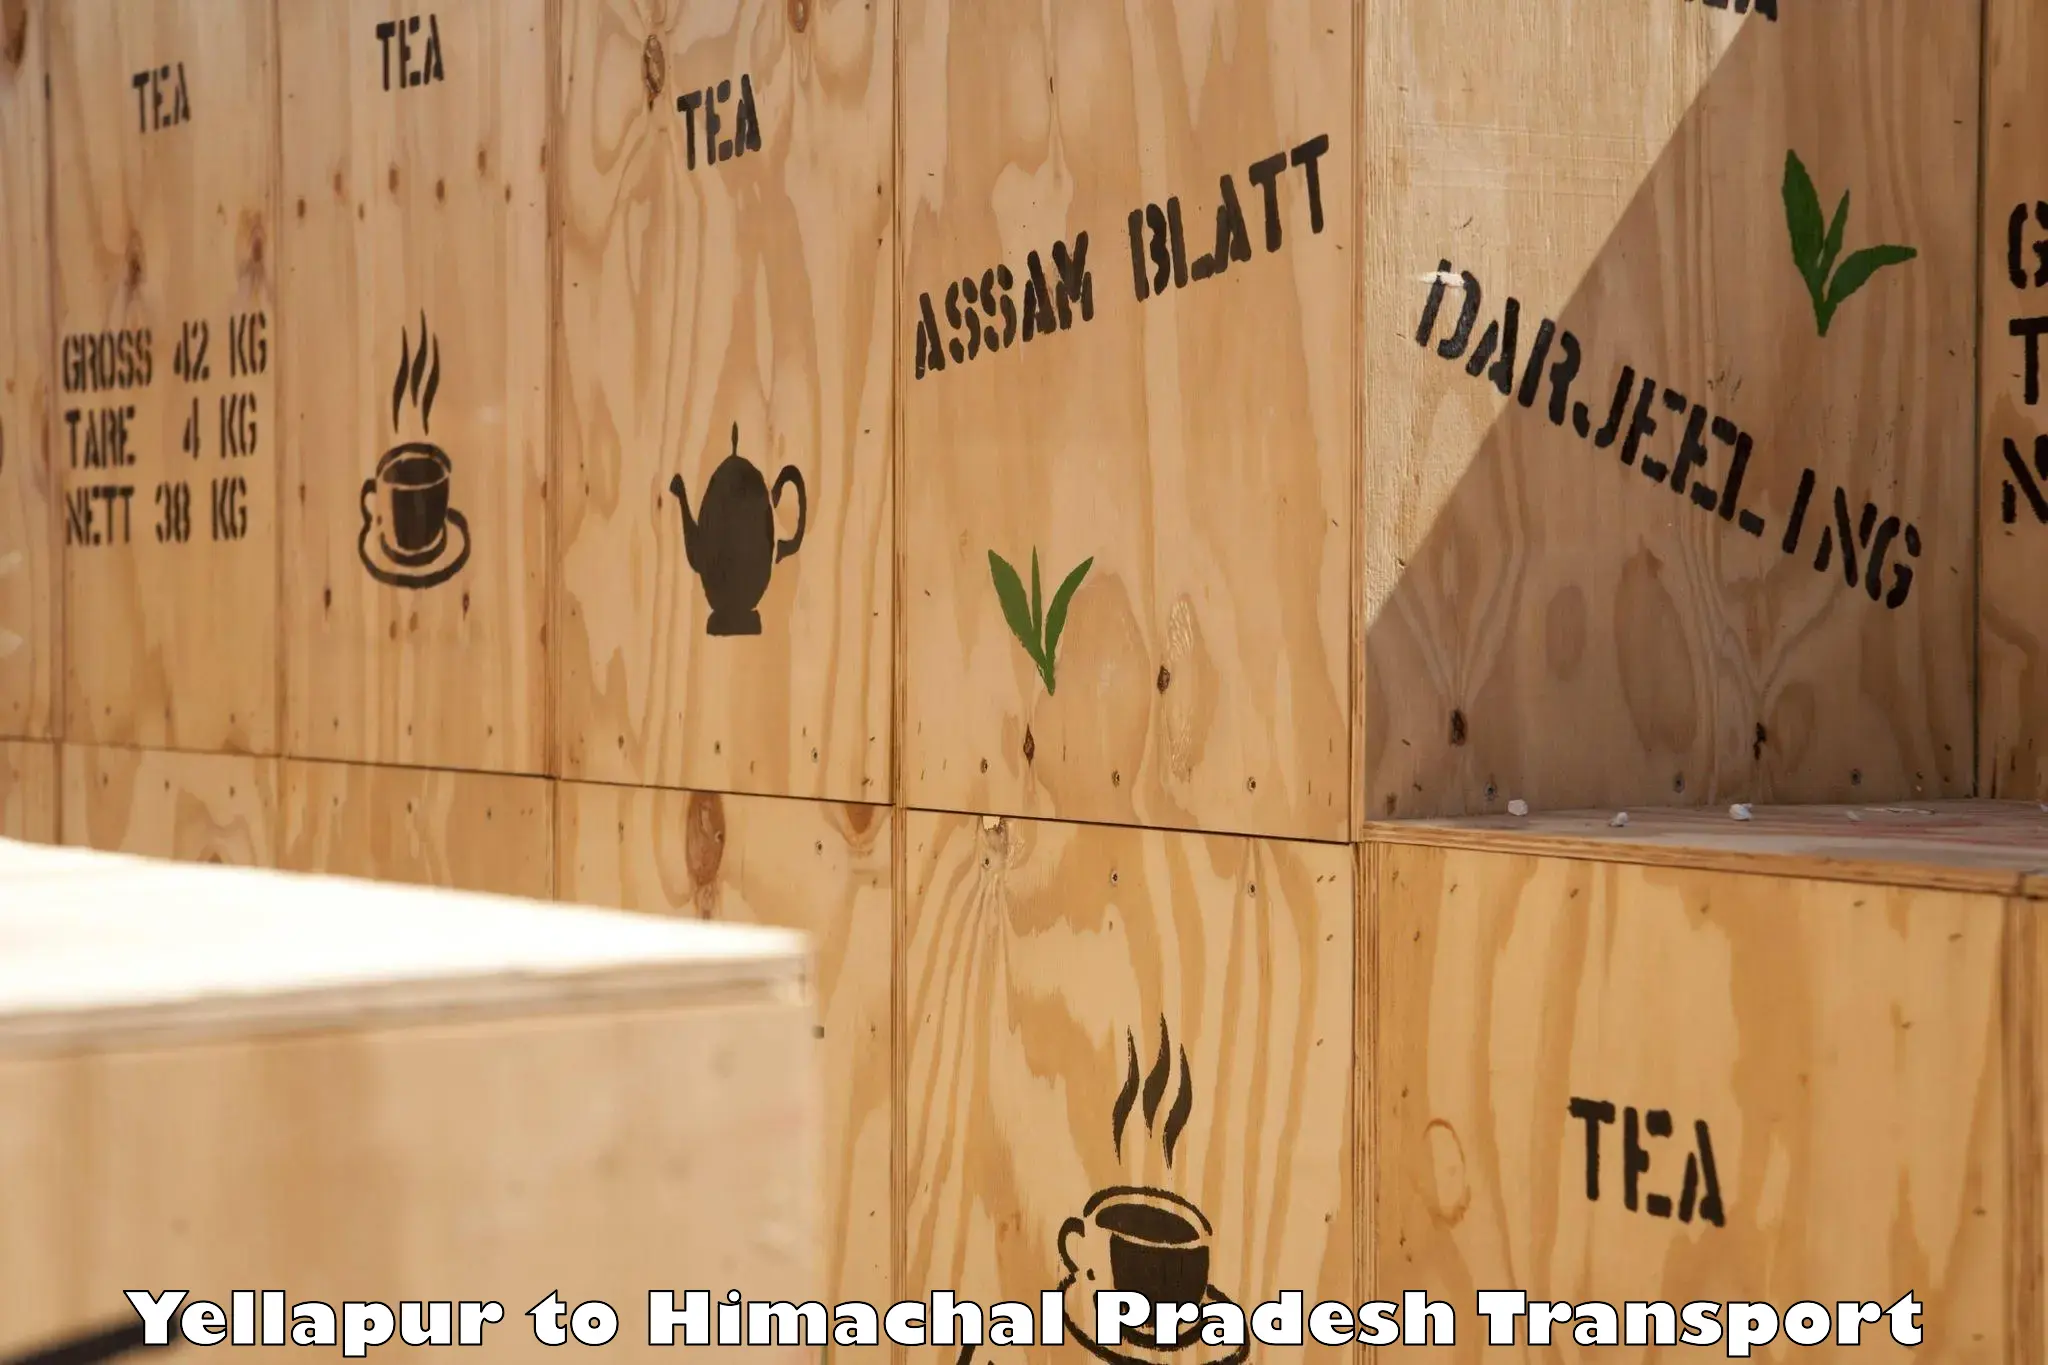 Furniture transport service Yellapur to Dharampur Kasauli